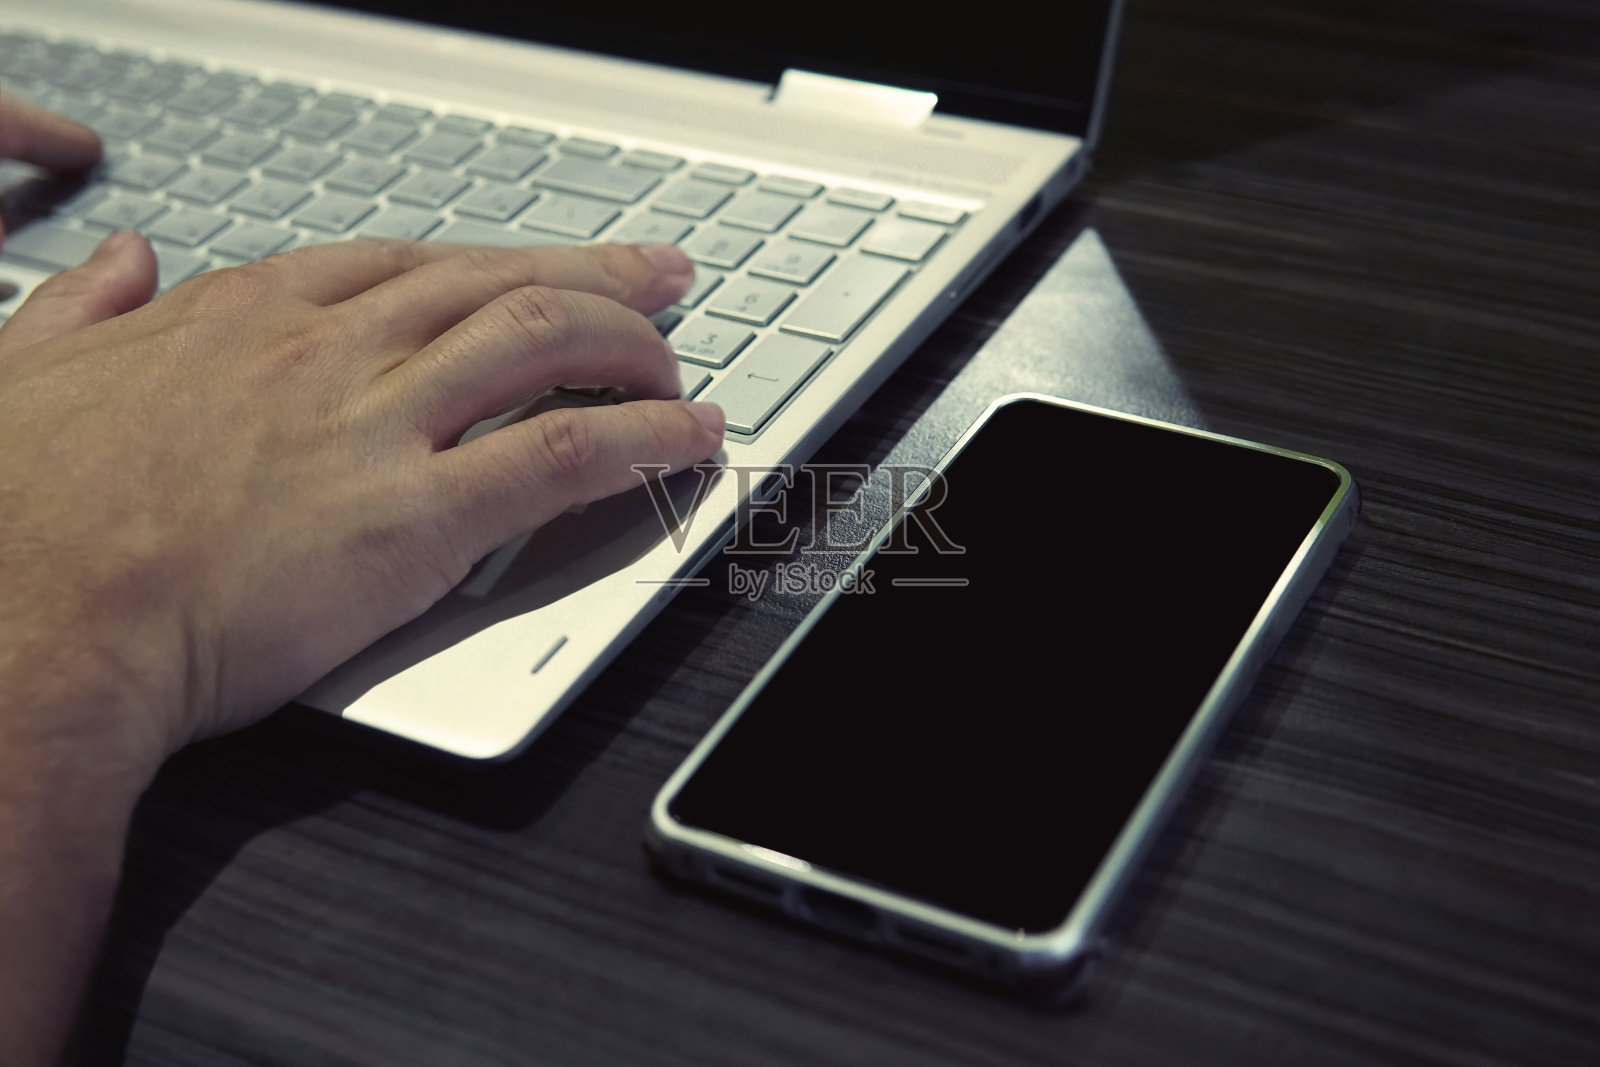 一名男子坐在笔记本电脑和智能手机后面，手握键盘。黑屏手机放在桌子上，靠近笔记本，男性的手放在键盘上。深夜工作的自由职业者。网上业务照片摄影图片